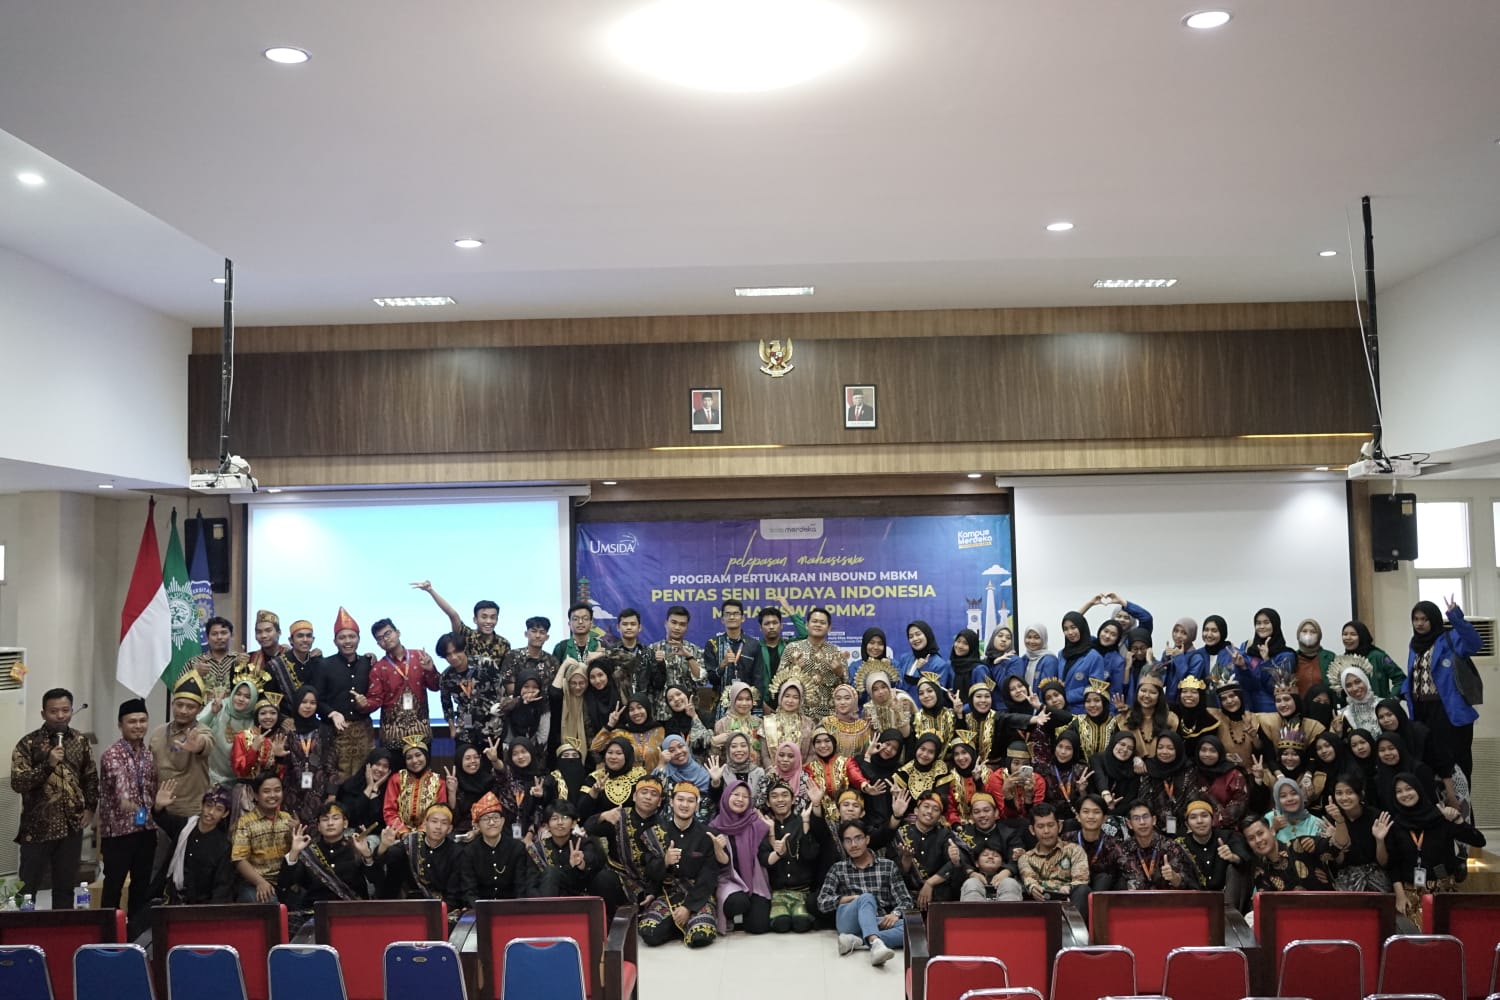 Pentas Seni Ragam Budaya Indonesia Menjadi Seremoni Pelepasan Mahasiswa PMM 2 dan PMU di Umsida